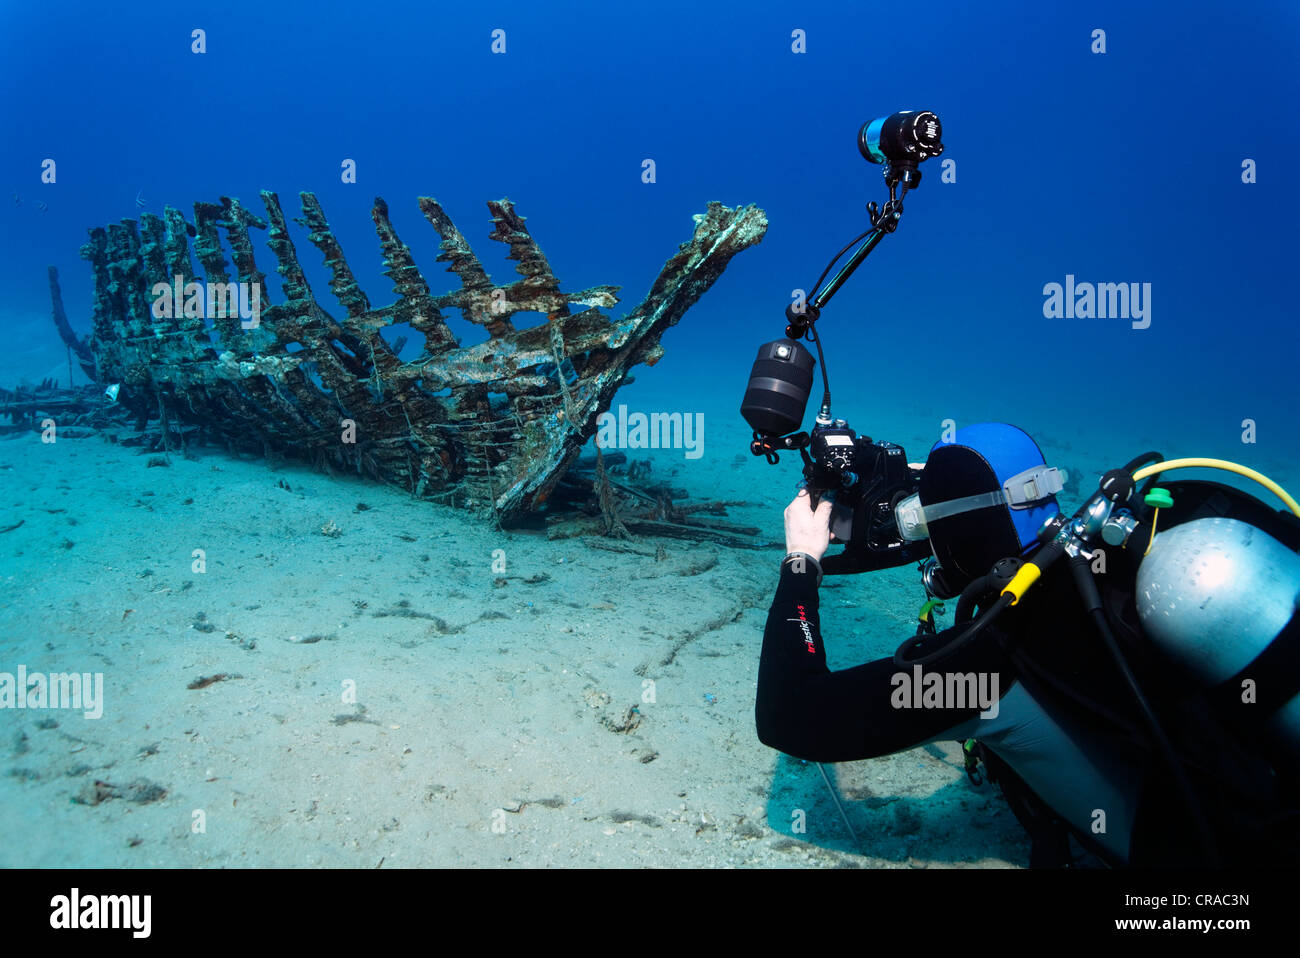 Photographe sous-marin en prenant la photo d'un bateau en bois épave, Makadi Bay, Hurghada, Egypte, Mer Rouge, Afrique Banque D'Images